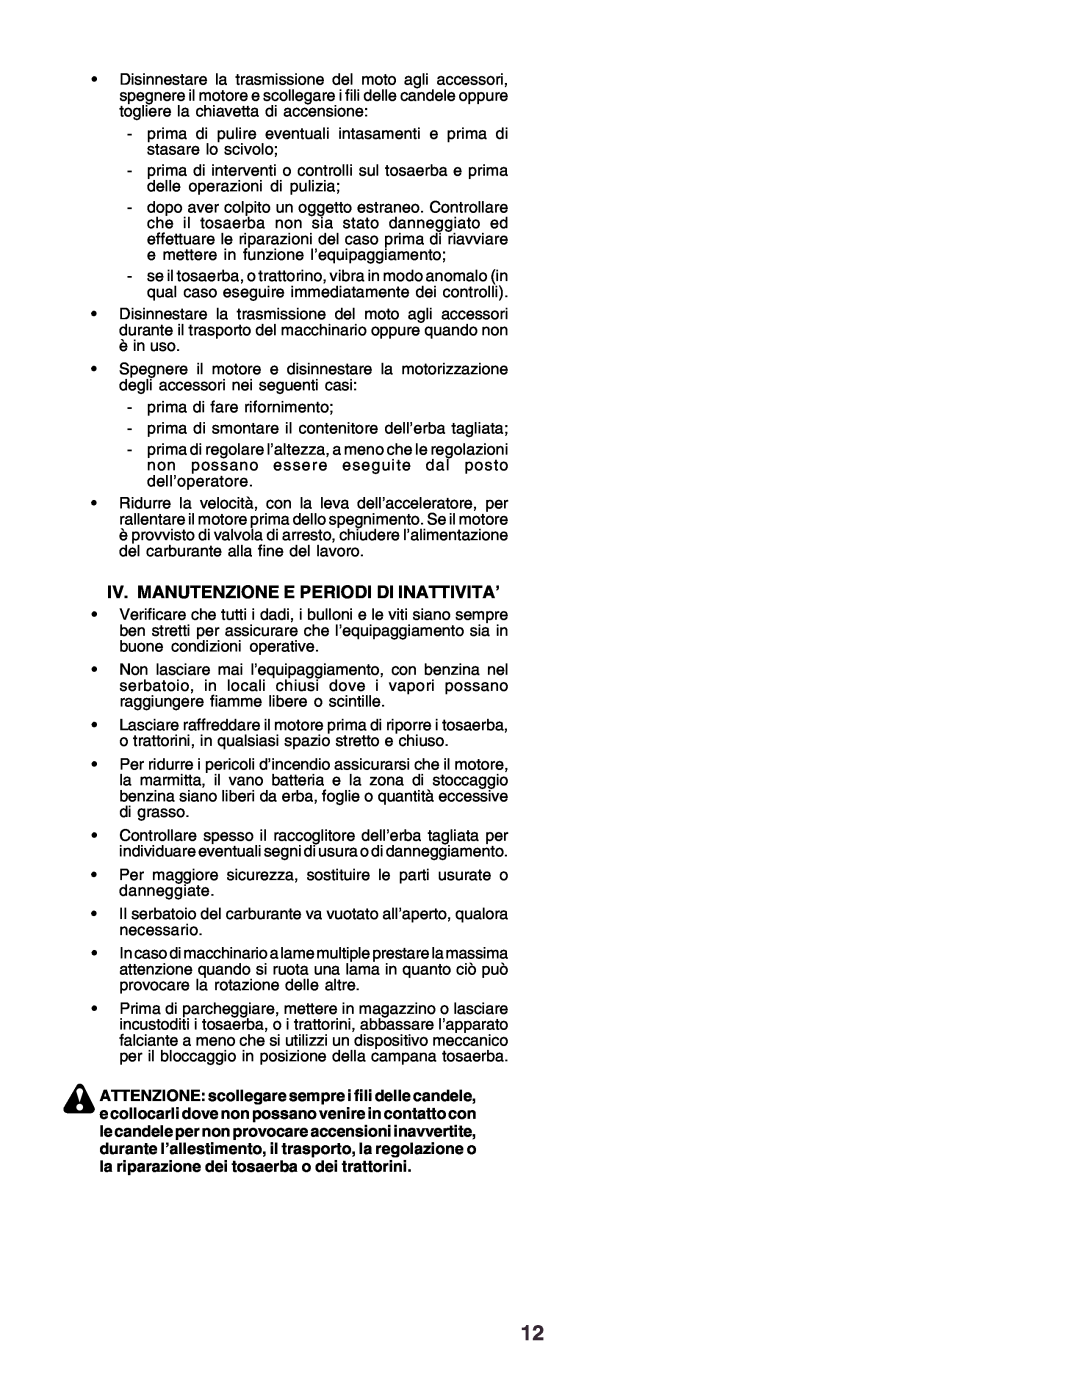 Husqvarna CT130 instruction manual Iv. Manutenzione E Periodi Di Inattivita’ 